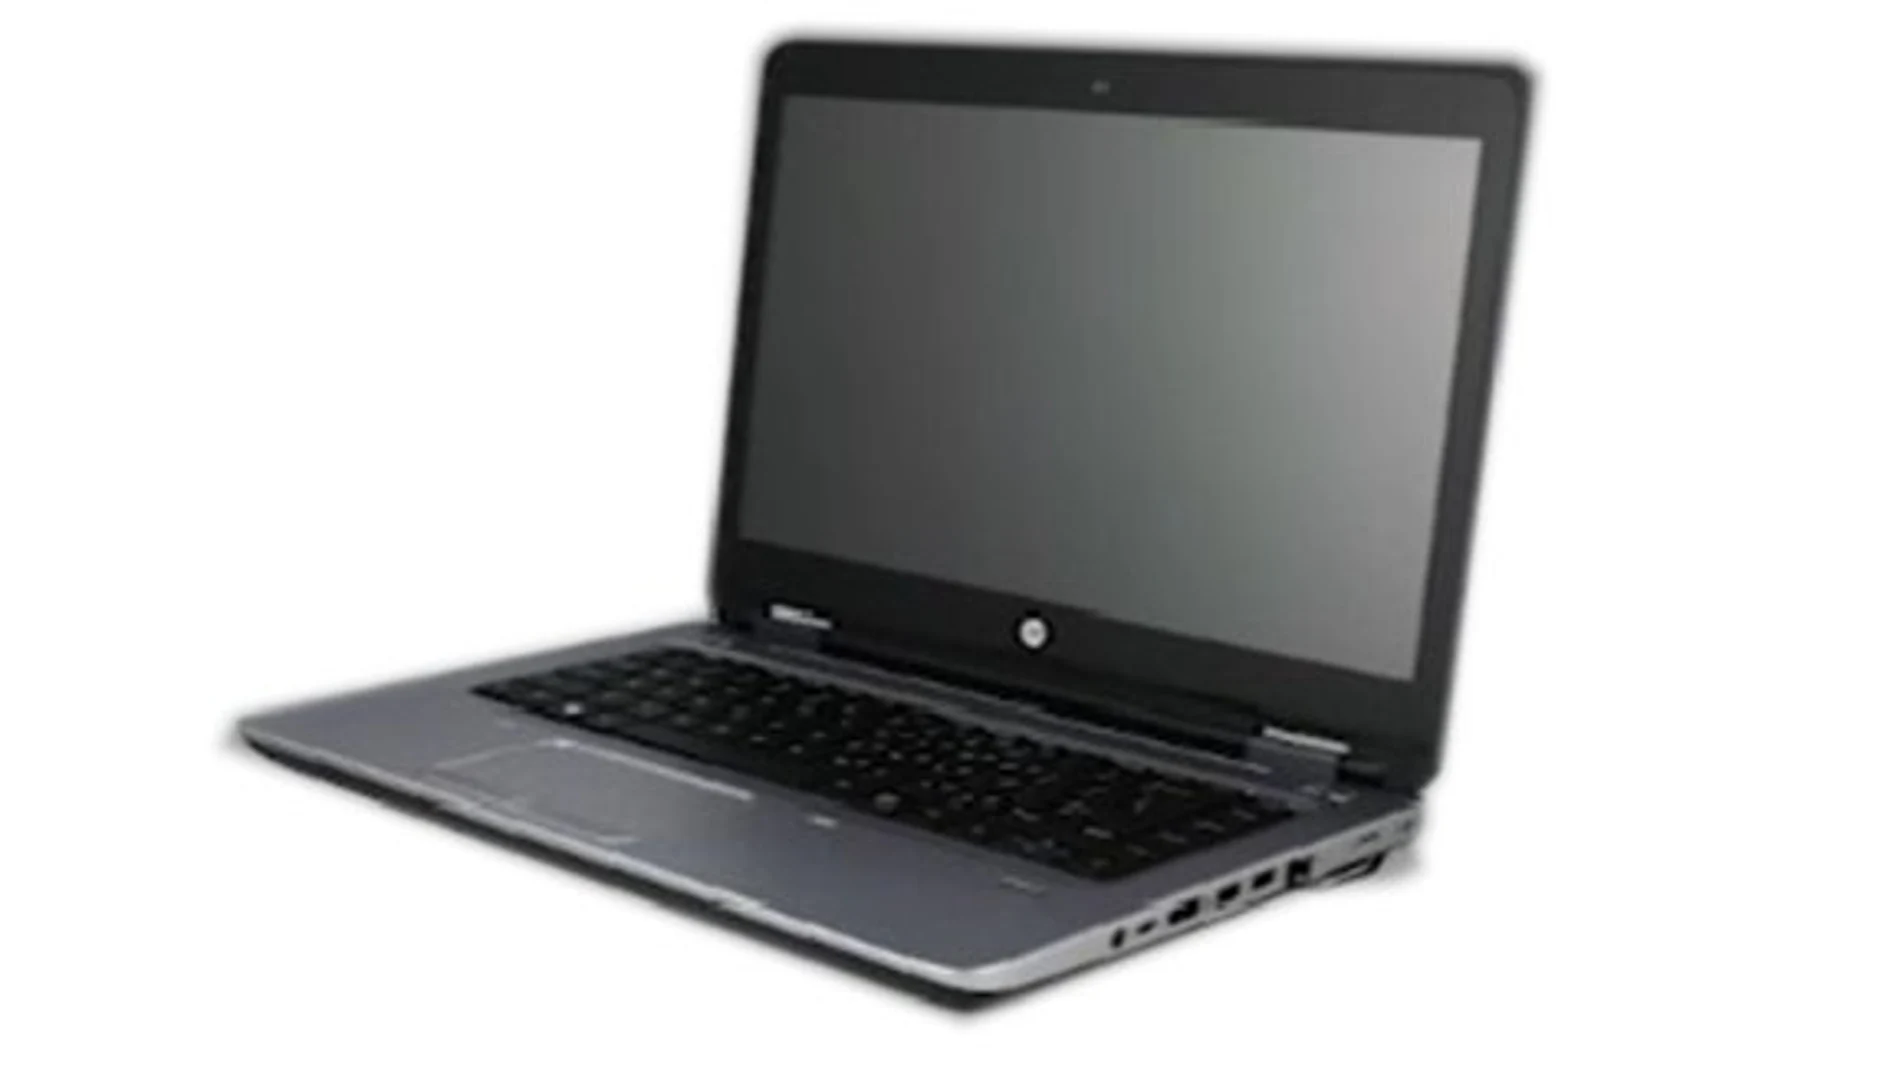 El HP ProBook 64x, uno de los modelos afectados